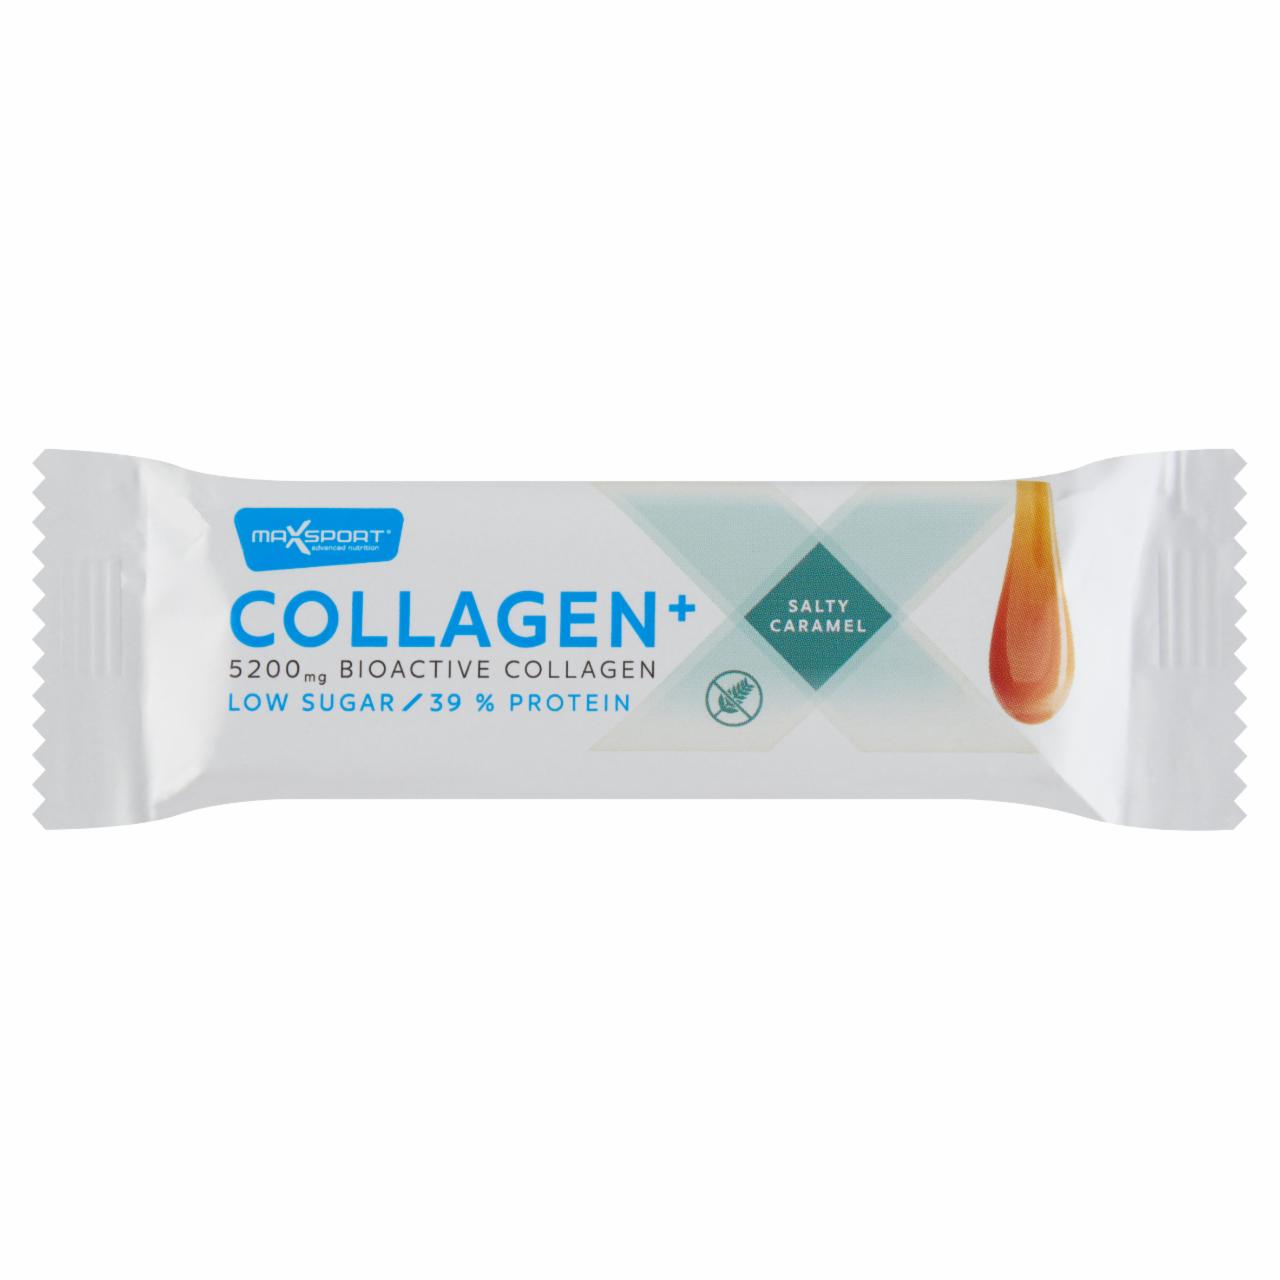 Képek - MaxSport Collagen+ sós karamellás protein szelet kollagénnel tejcsokoládé bevonatban 40 g